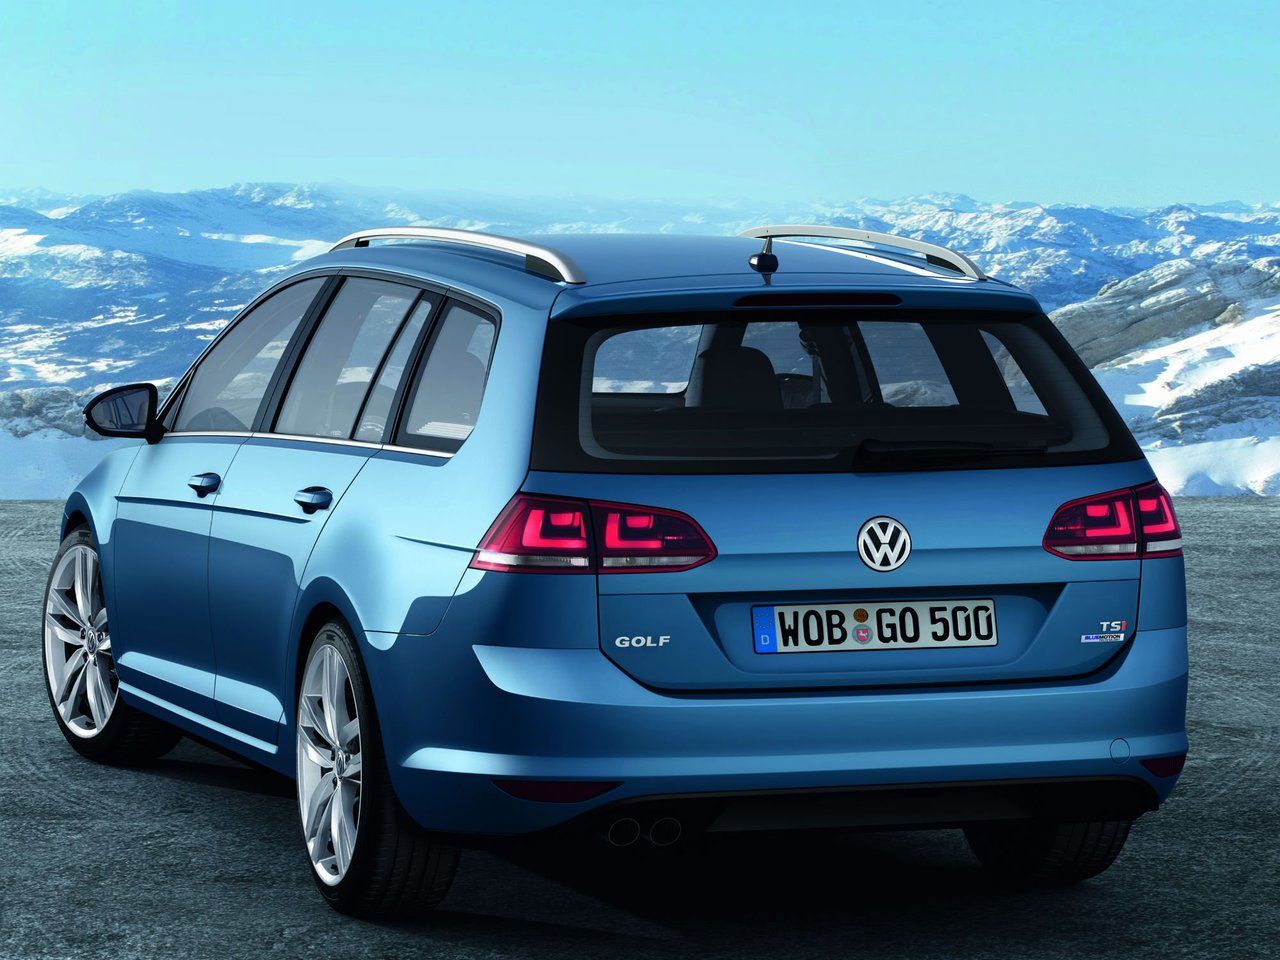 Volkswagen Golf универсал 2012. VW Jetta 5 универсал. Фольксваген универсал 2013. Volkswagen Golf mk7 variant. Фольксваген гольф универсал дизель